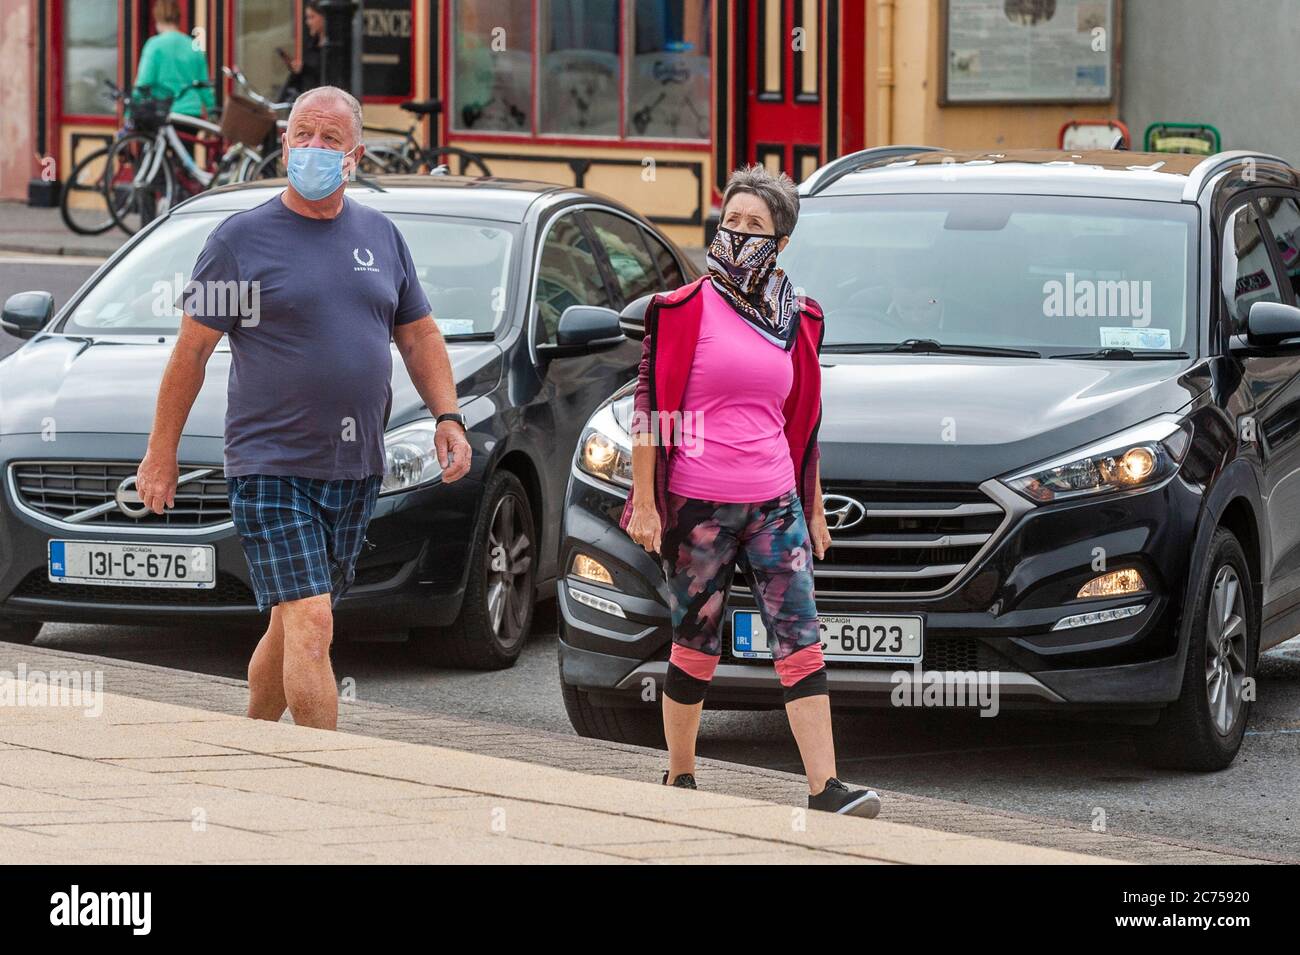 Bantry, West Cork, Irland. Juli 2020. In Bantry tragen die Menschen Gesichtsmasken, um sich gegen Covid-19 zu schützen. Quelle: AG News/Alamy Live News Stockfoto